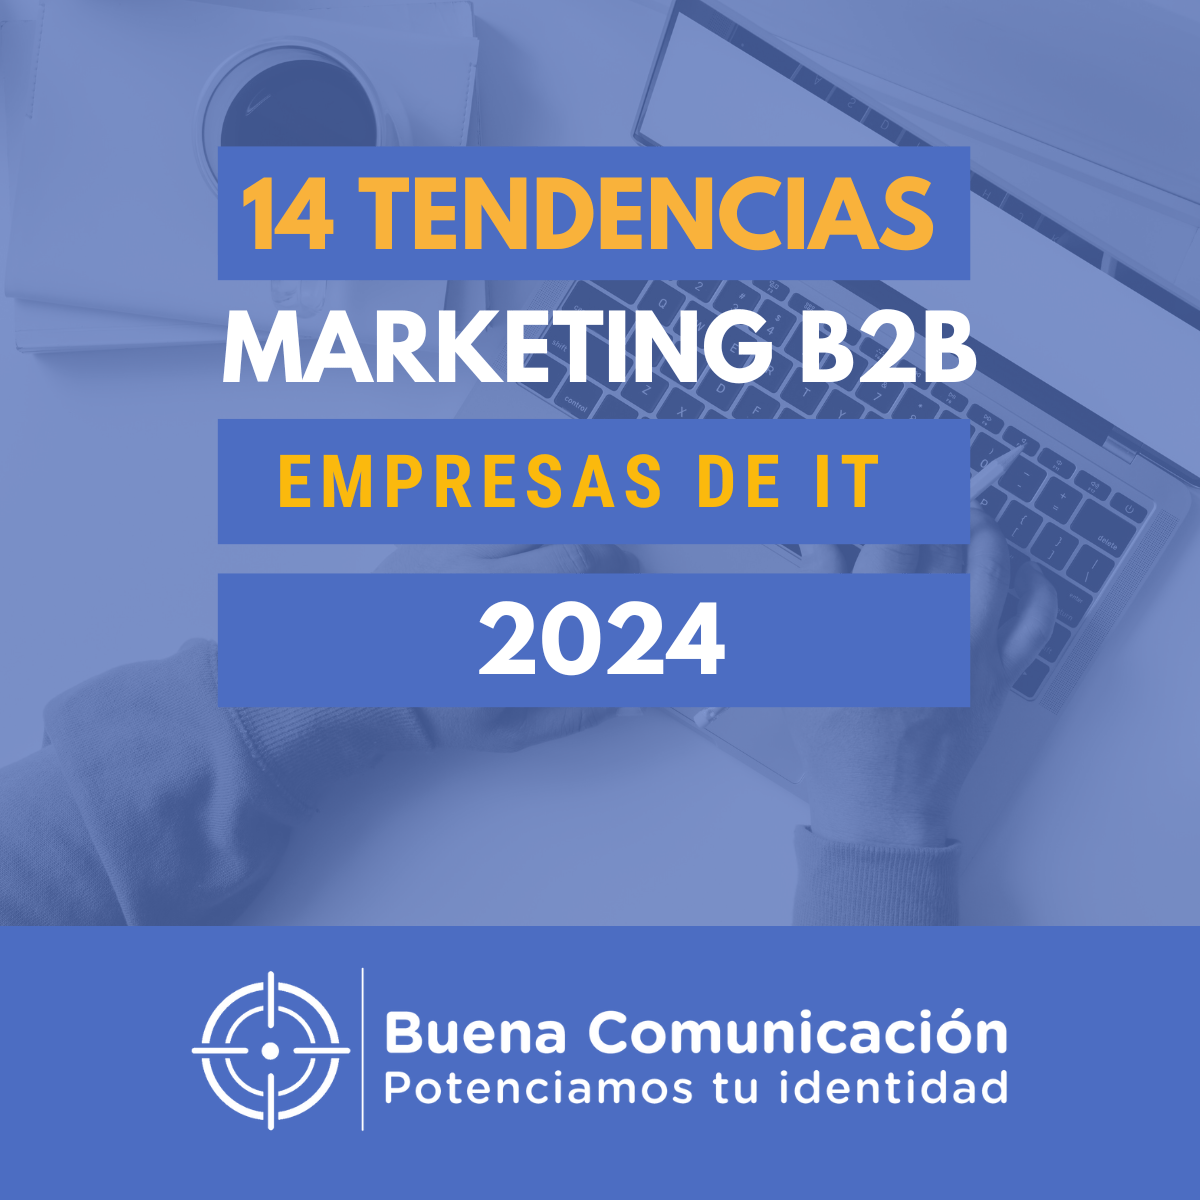 En este momento estás viendo 14 tendencias clave en el marketing B2B para 2024